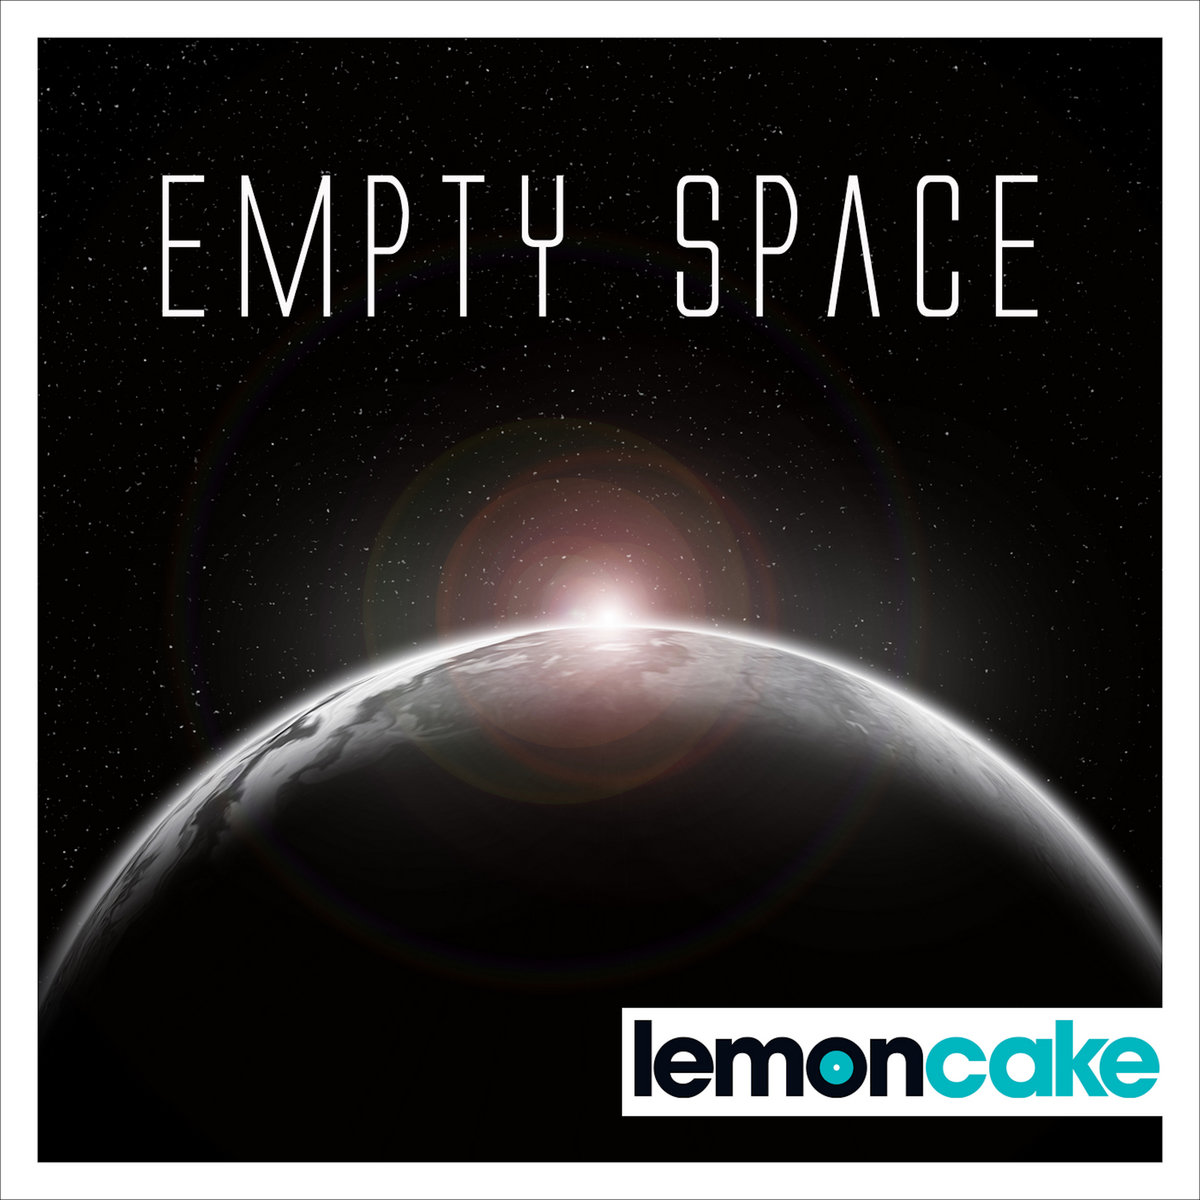 Space 1 песни. Empty космос. The Emptiness of Space. Обложка пространства. Emptiness обложка.